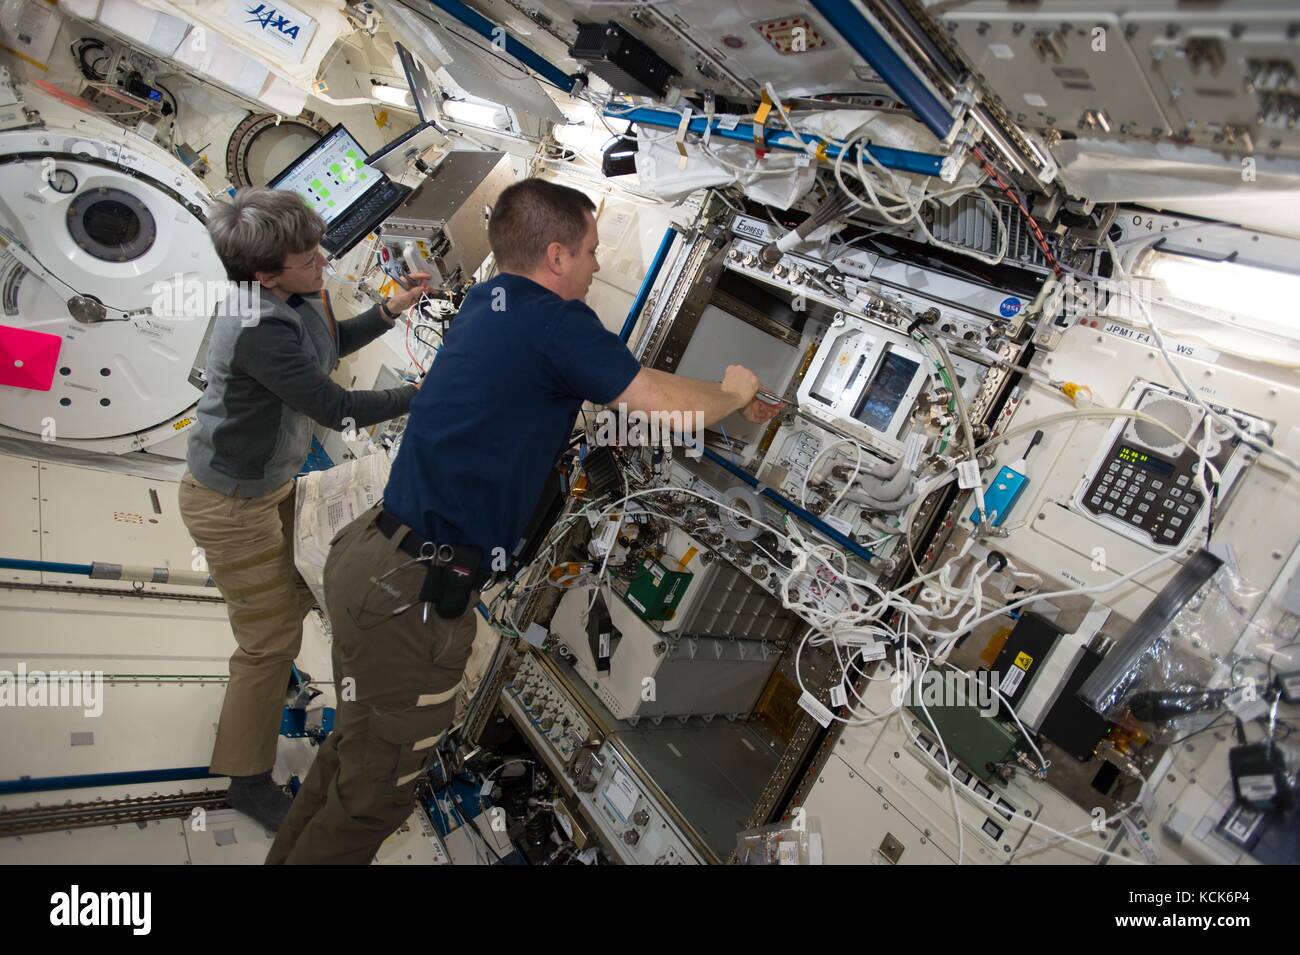 La station spatiale internationale de la nasa le premier équipage Expédition 51 astronautes américains Peggy Whitson (à gauche) et jack fischer travaillent à l'intérieur du module laboratoire japonais Kibo 1 août 2017, dans l'orbite de la terre. (Photo de la nasa photo via planetpix) Banque D'Images